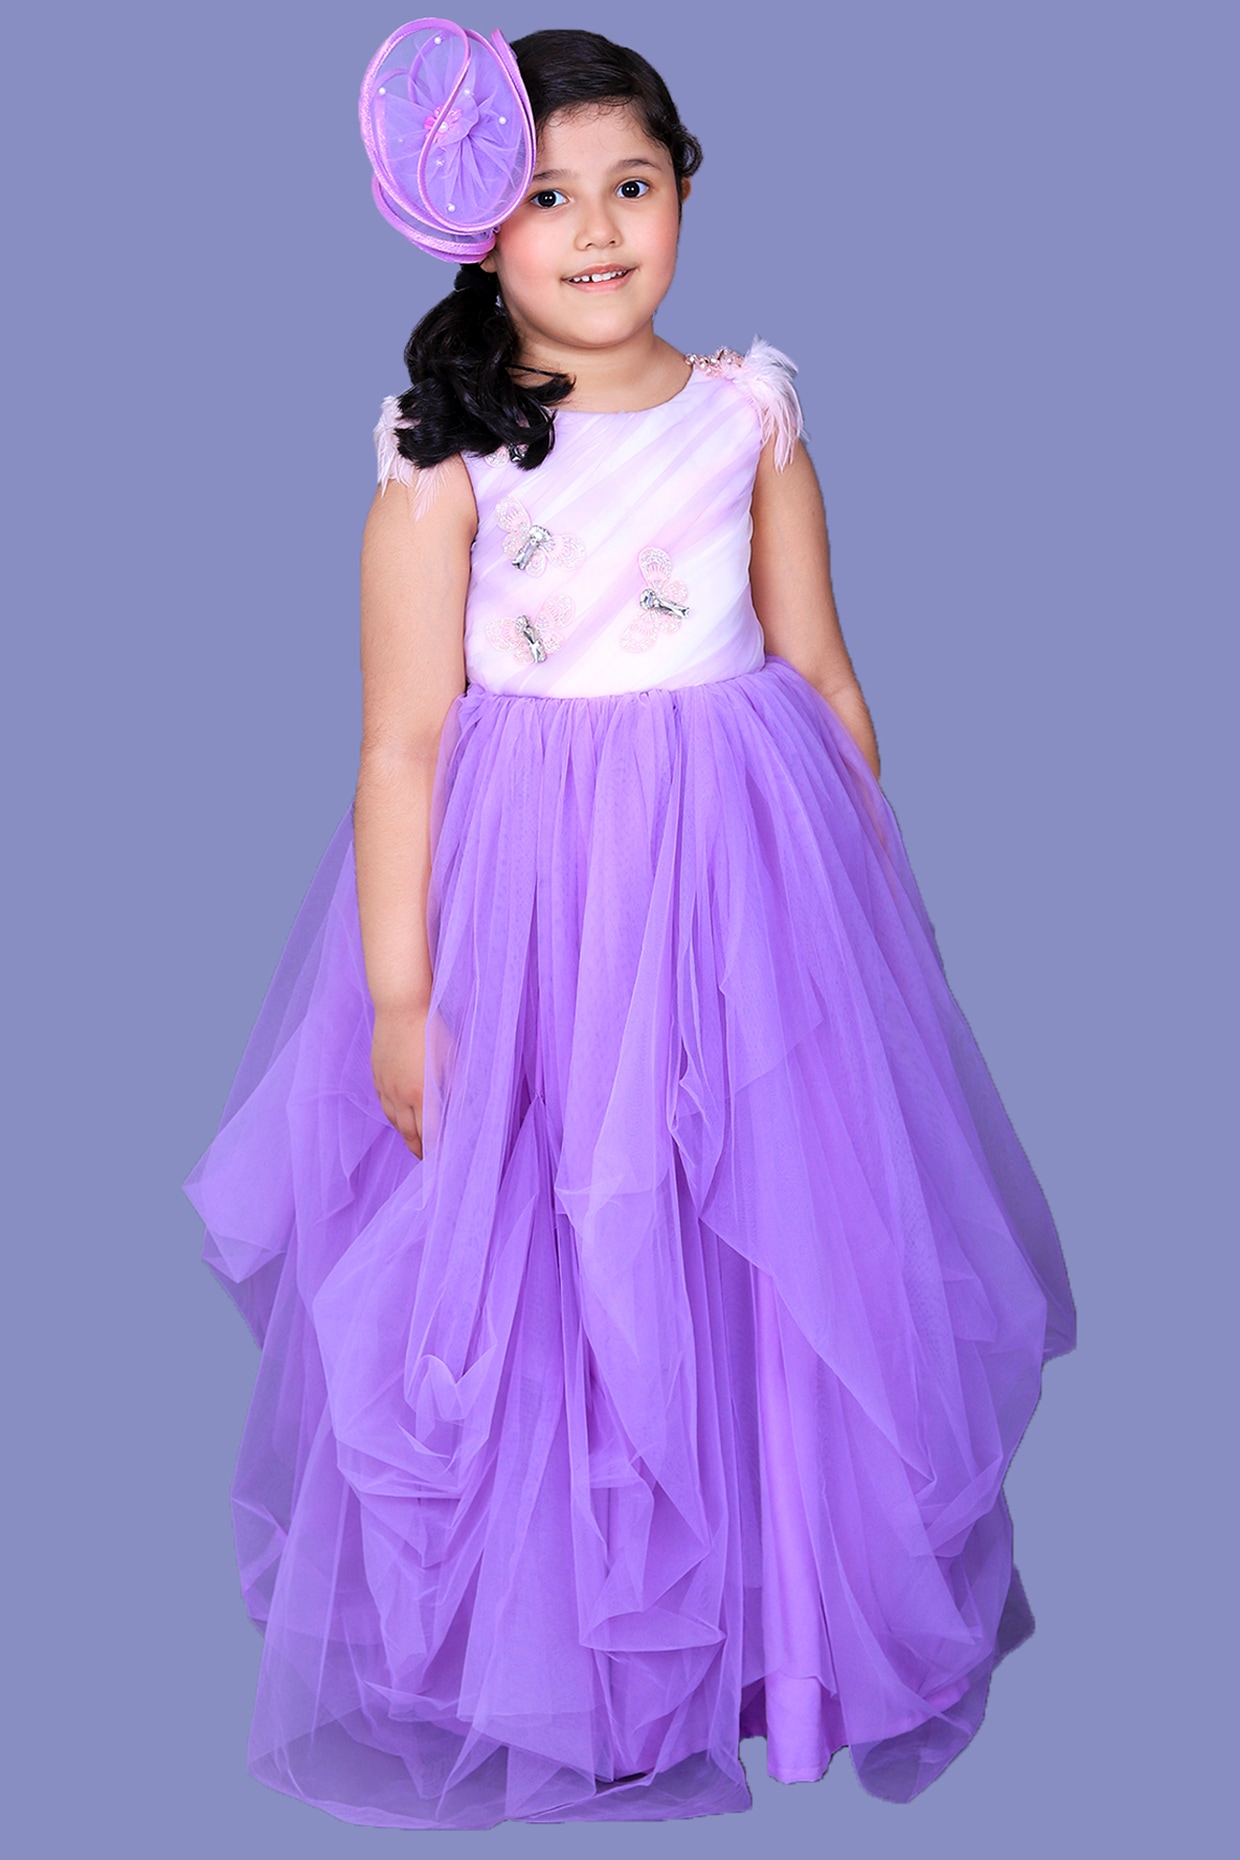 DREAMFILL Baby Girls Midi/Knee Length Festive/Wedding Dress Price in India  - Buy DREAMFILL Baby Girls Midi/Knee Length Festive/Wedding Dress online at  Flipkart.com